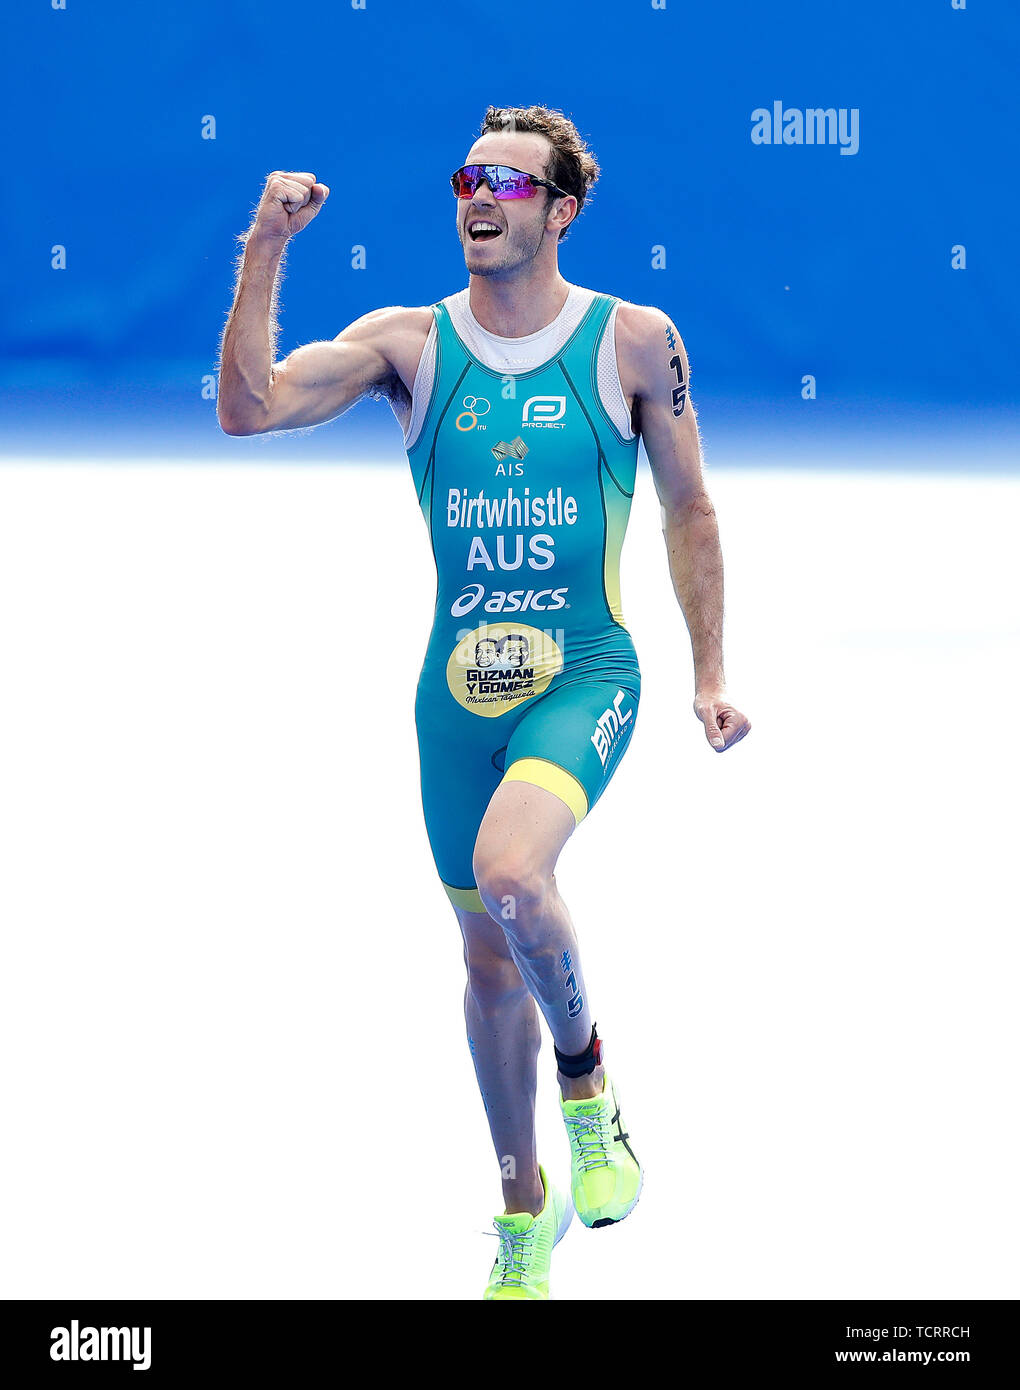 Australiens Jakob Birtwhistle feiert den Gewinn der Männer Triathlon, während der 2019 ITU World Triathlon Series in Leeds. Stockfoto